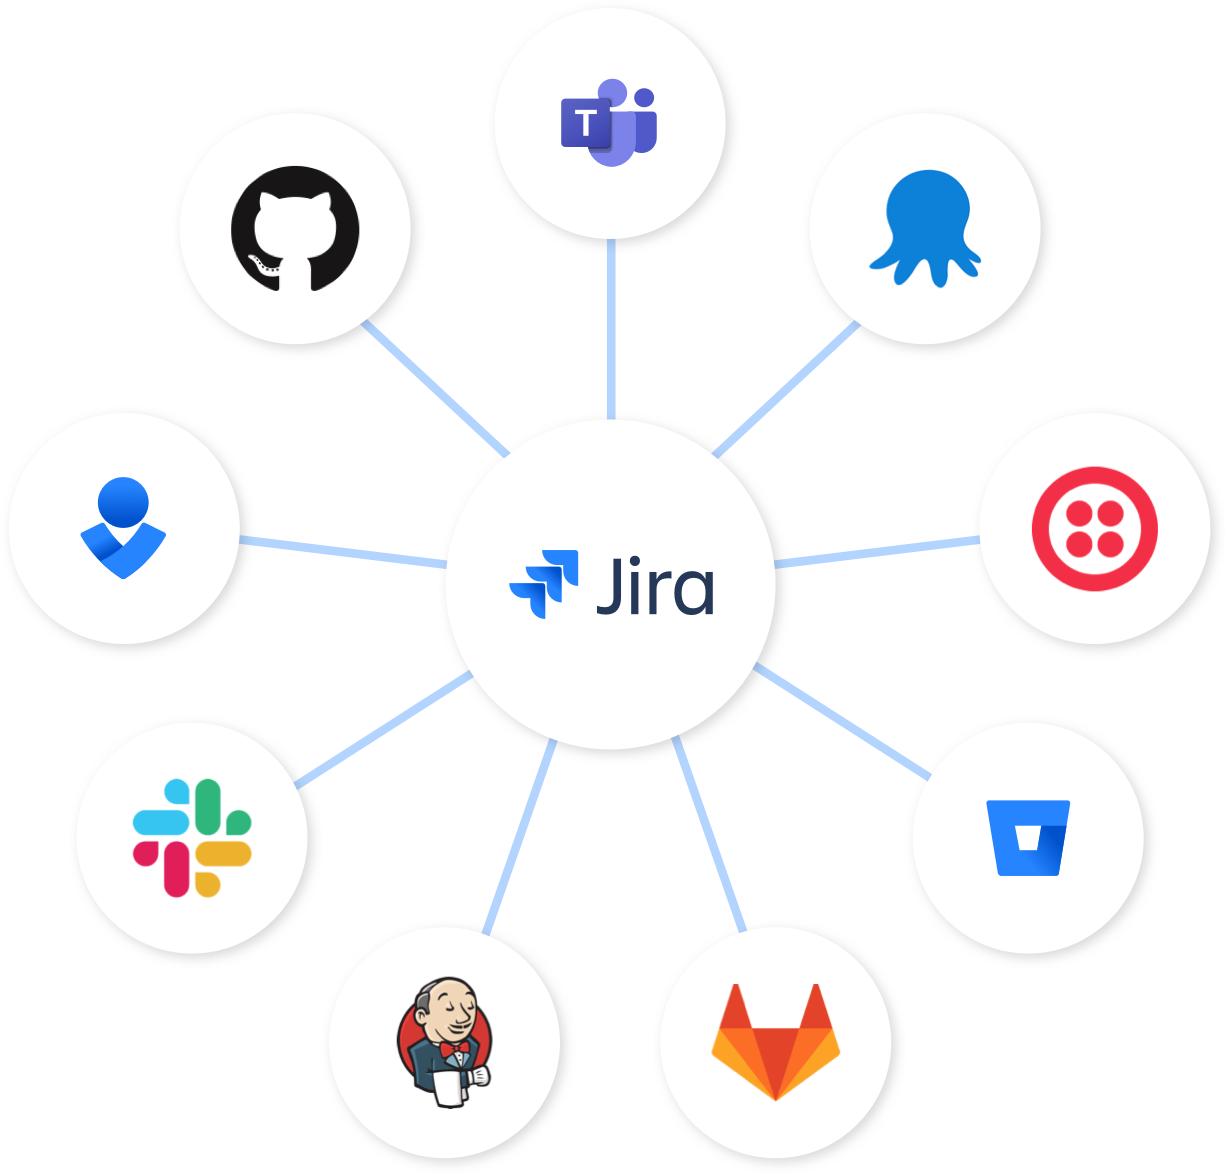 Nodo de Jira: Jira en el centro con Bitbucket, Slack y Opsgeniepsgenie conectados.